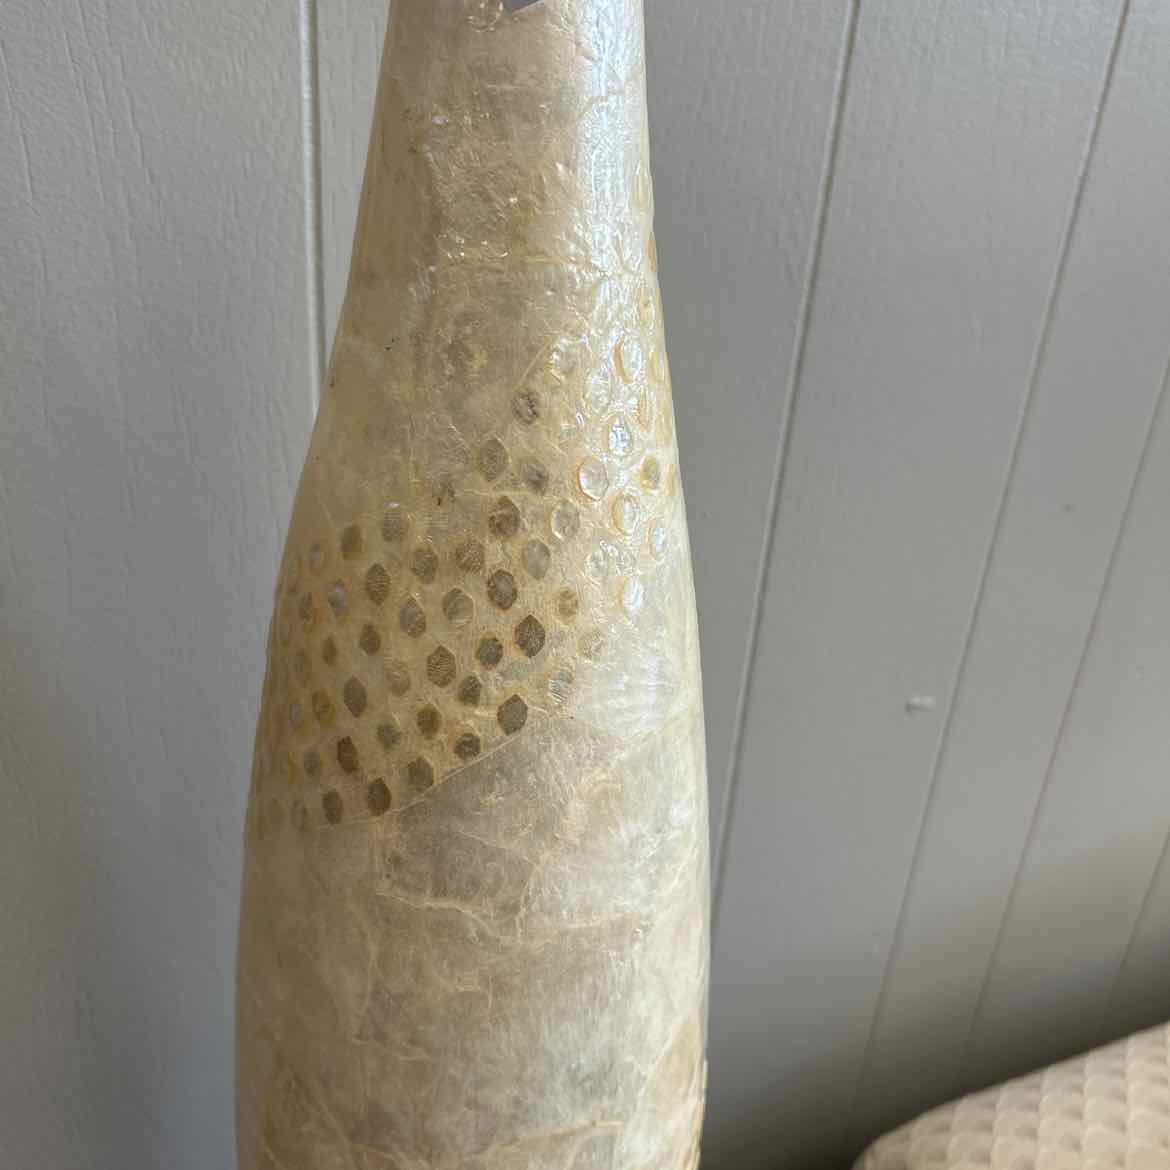 Ivory Shell Vase Capiz